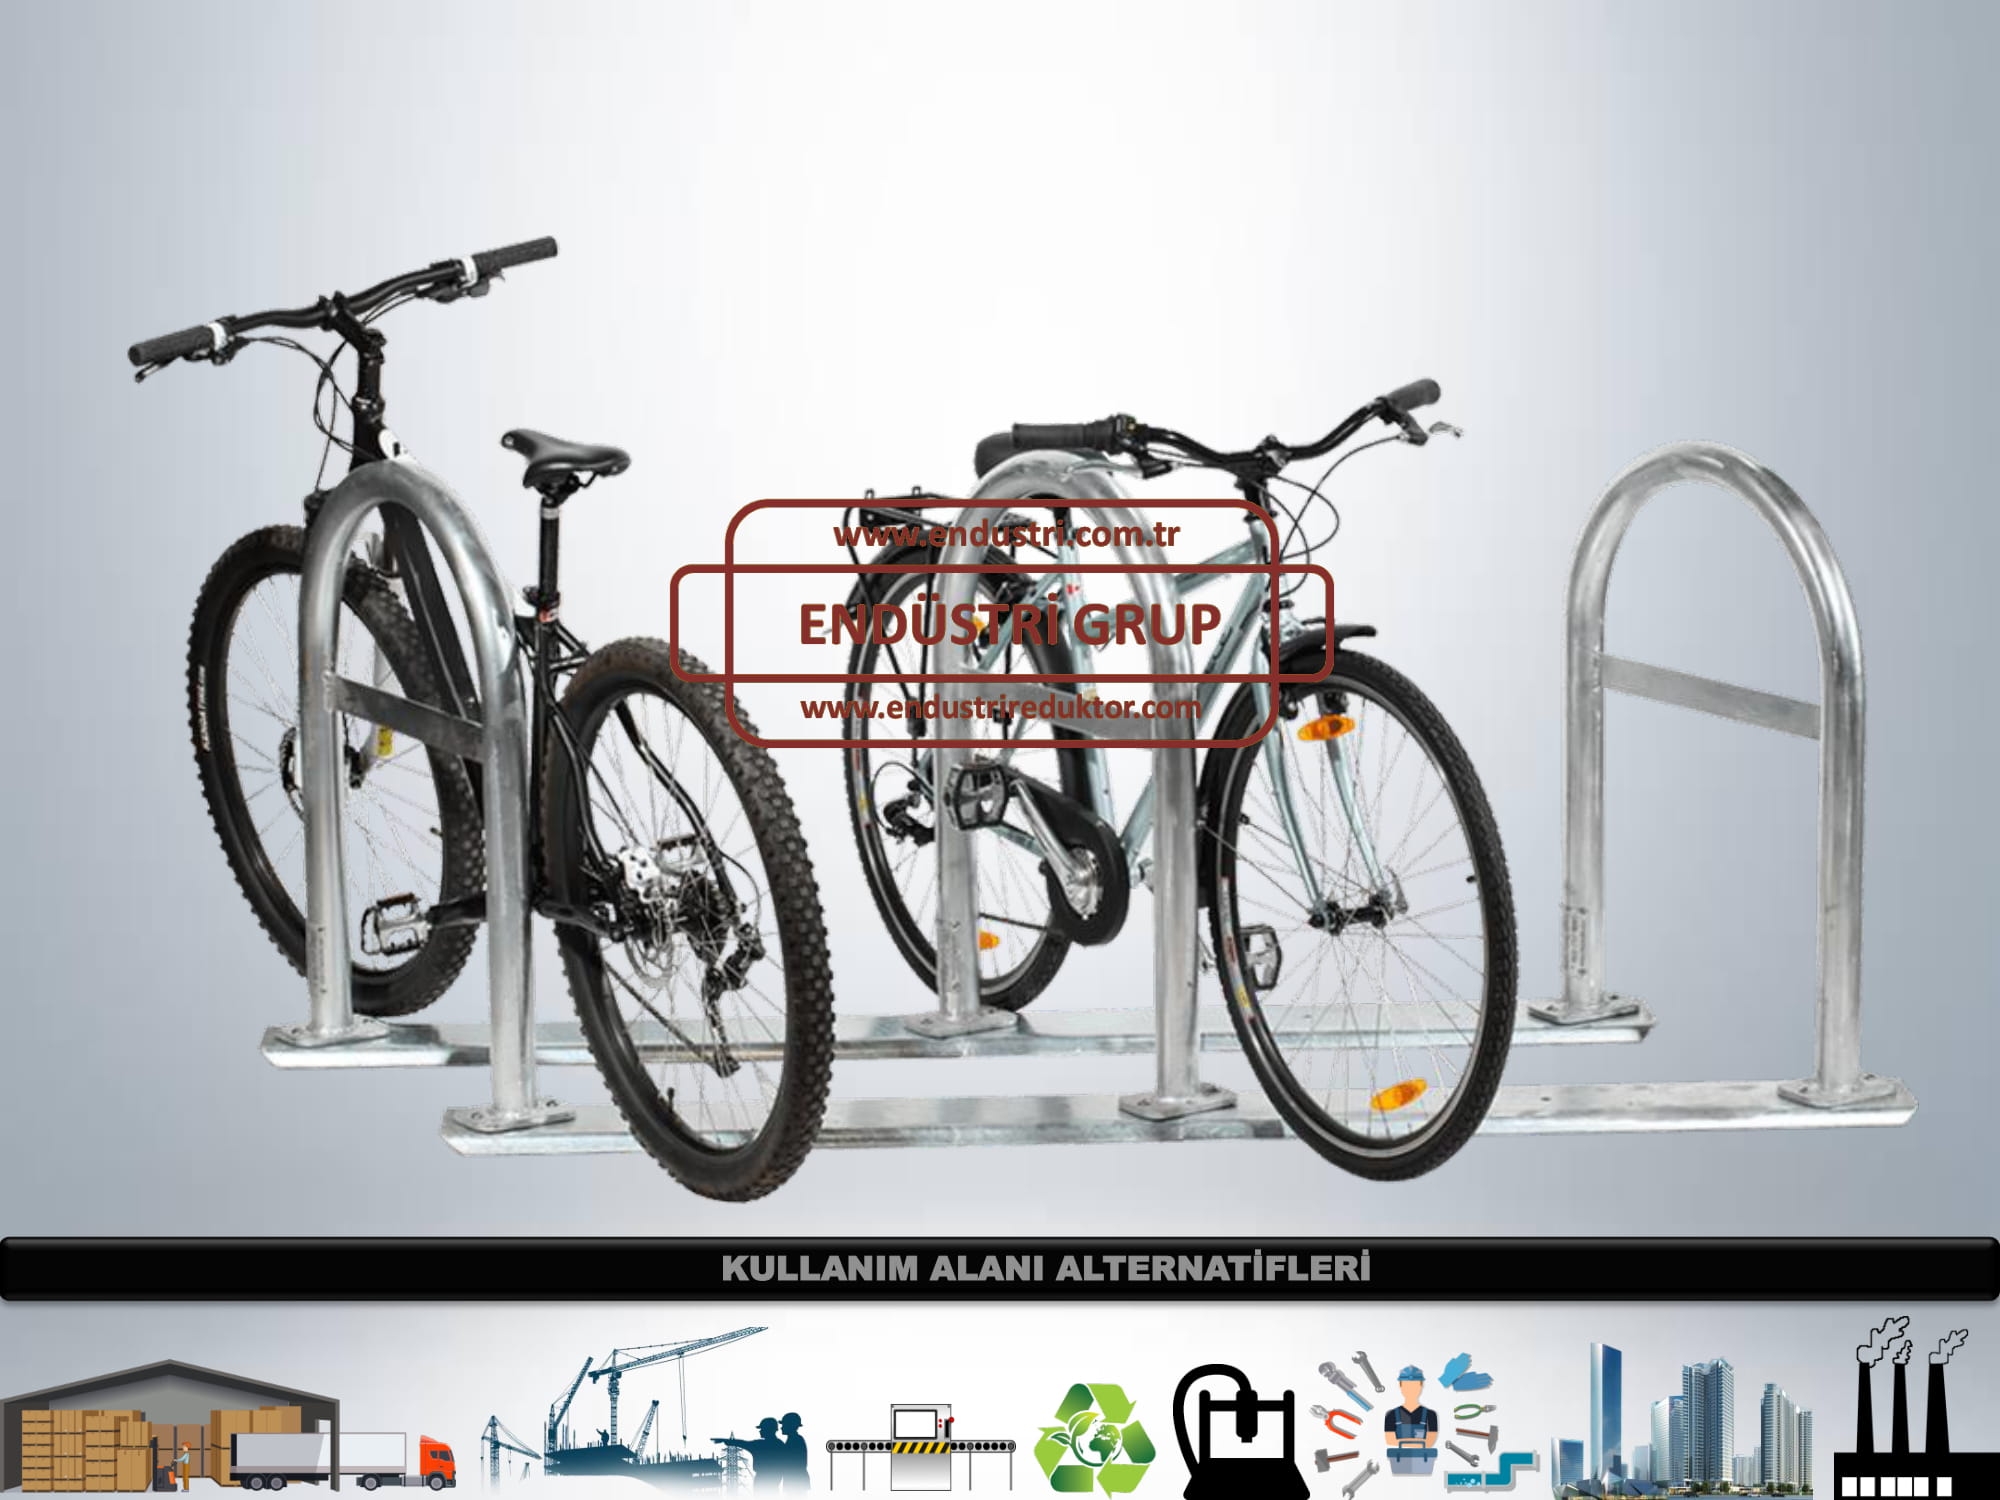 bisiklet-parki-demiri-aparati-duragi-imalati-olculeri-ureticileri-modelleri-dwg-fiyati